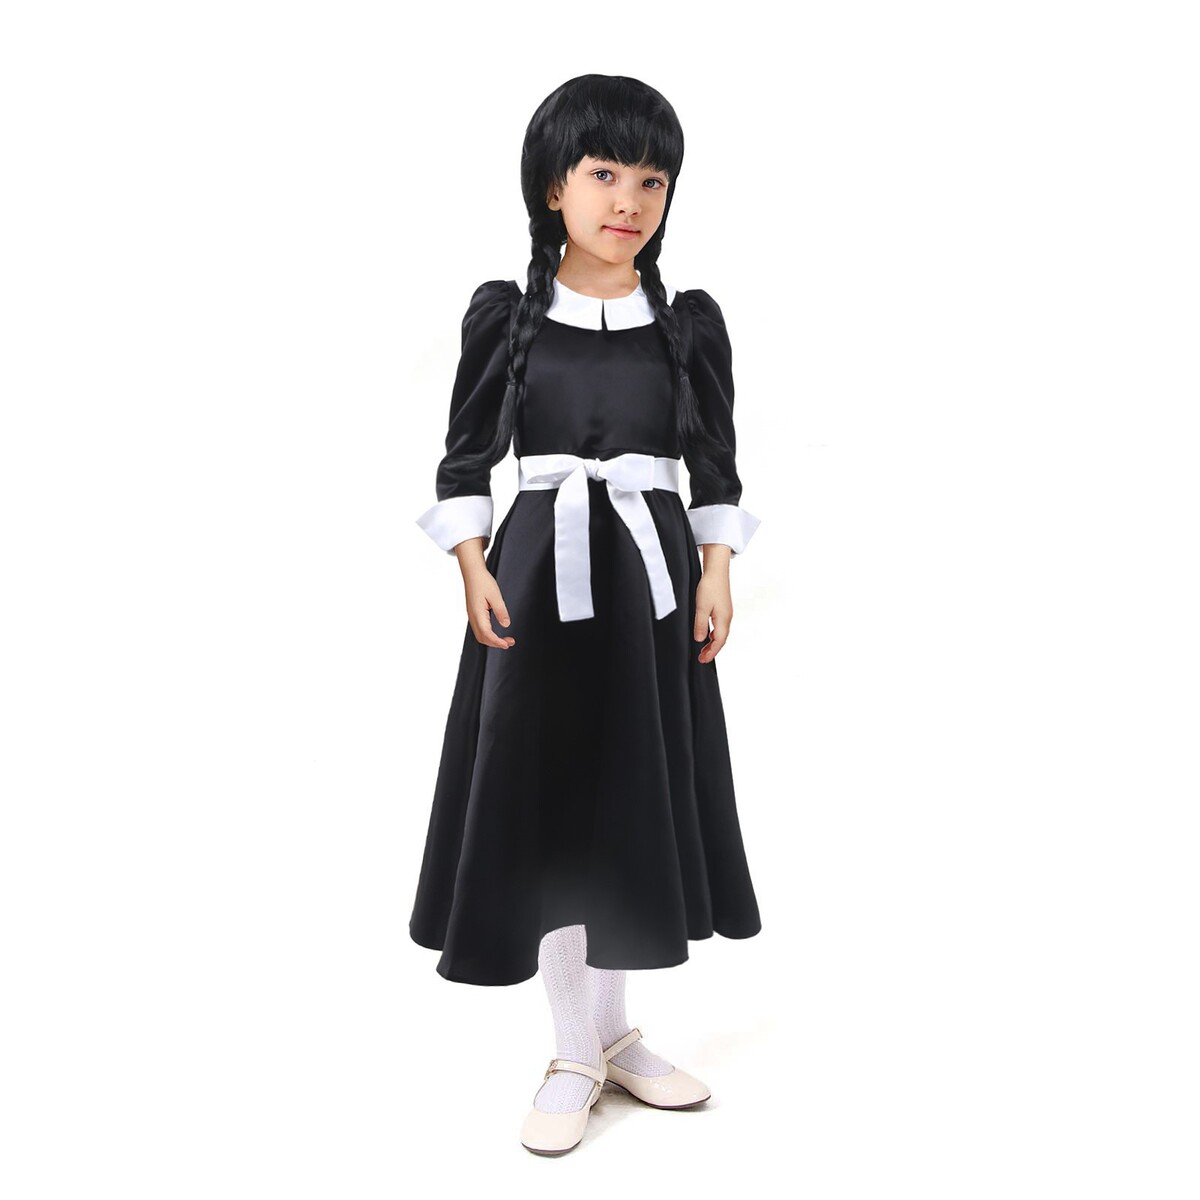 Карнавальное черное платье с белым воротником,атлас,п/э,р-р44,р164 атлас и аксис т3